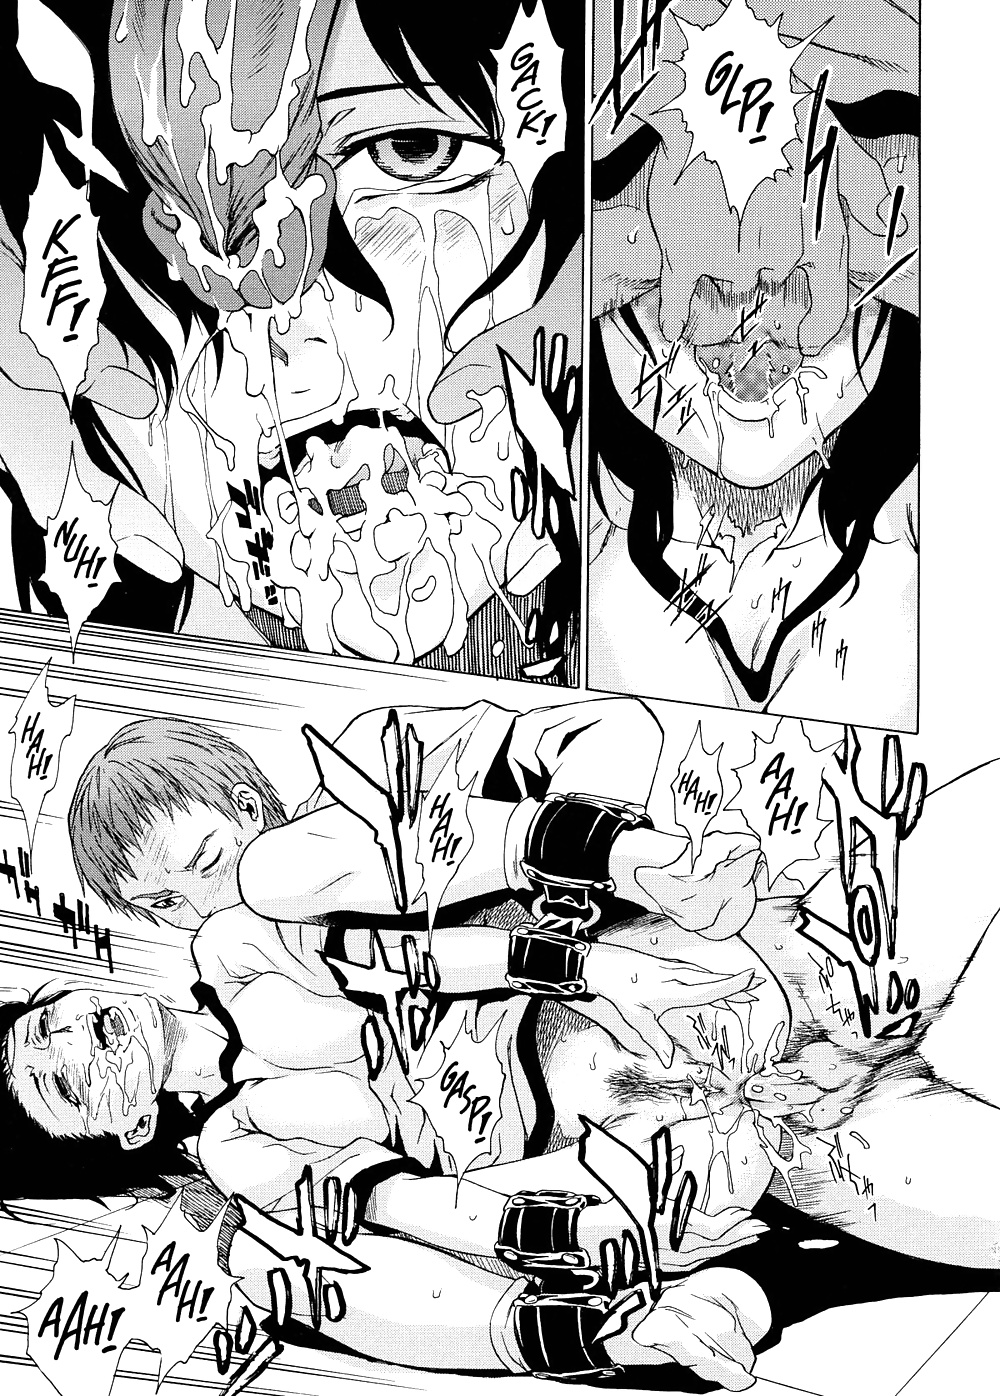 Domin-8 Me   Take On me   Hentai Manga Part 2 (70/98)